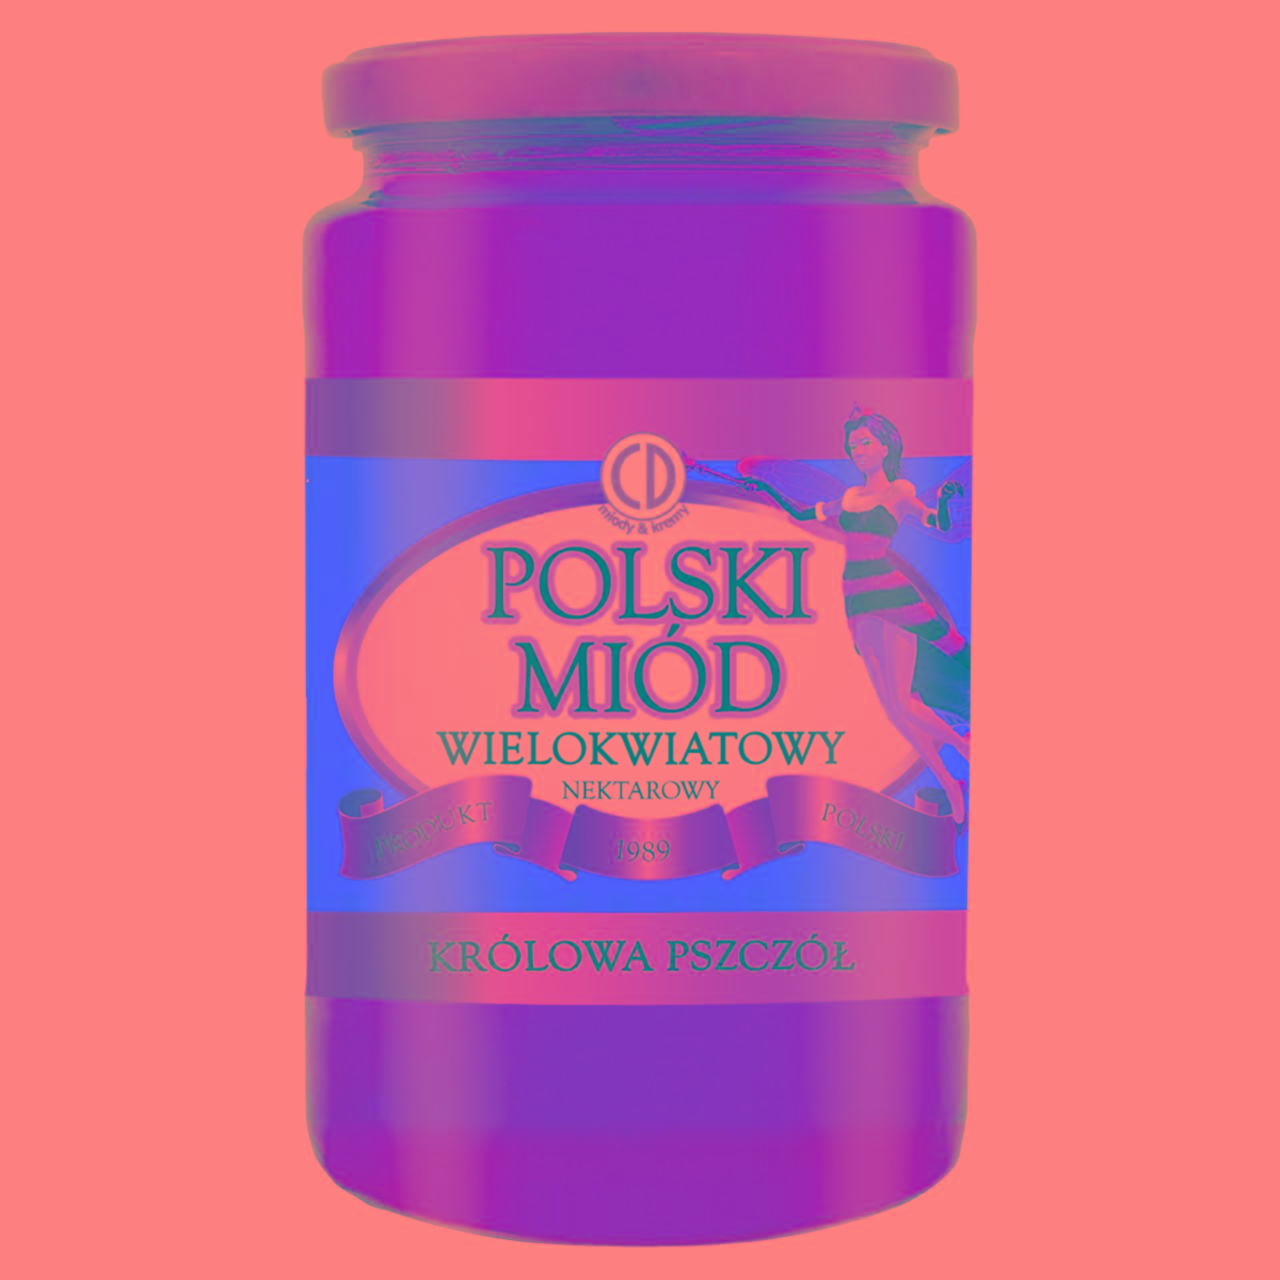 Photo - Królowa Pszczół Multiflower Nectar Polish Honey 1 kg